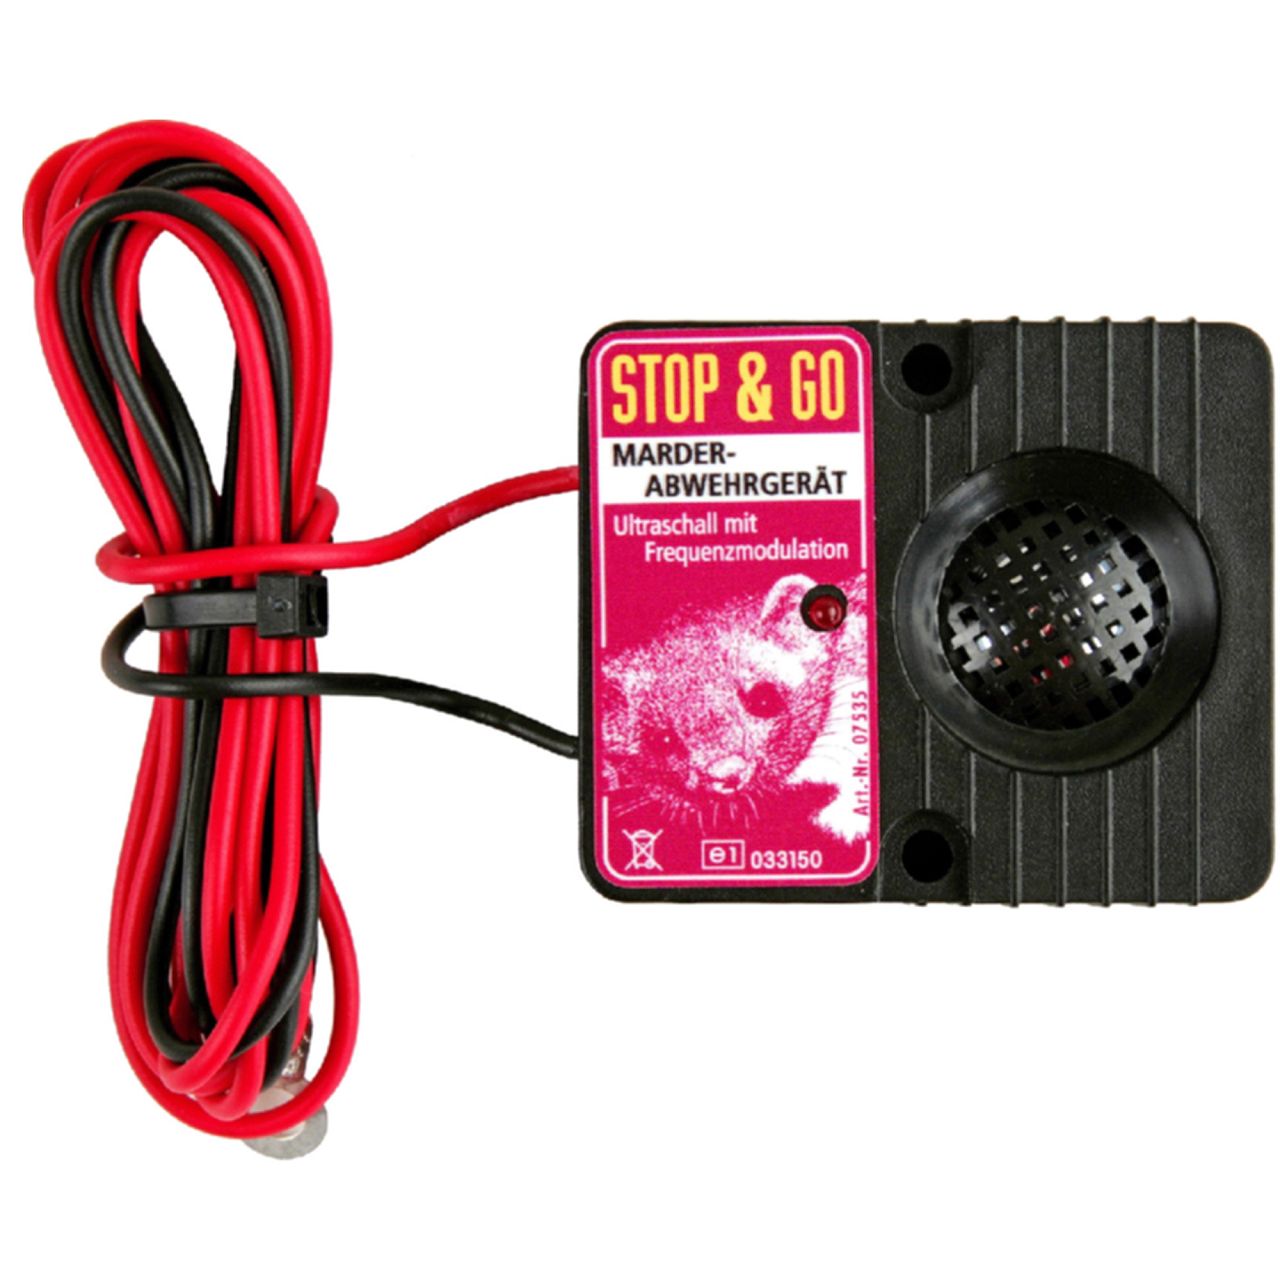 Stop & Go Batterie-Ultraschall-Marderabwehr, Kfz-Technik / Outdoor-Technik